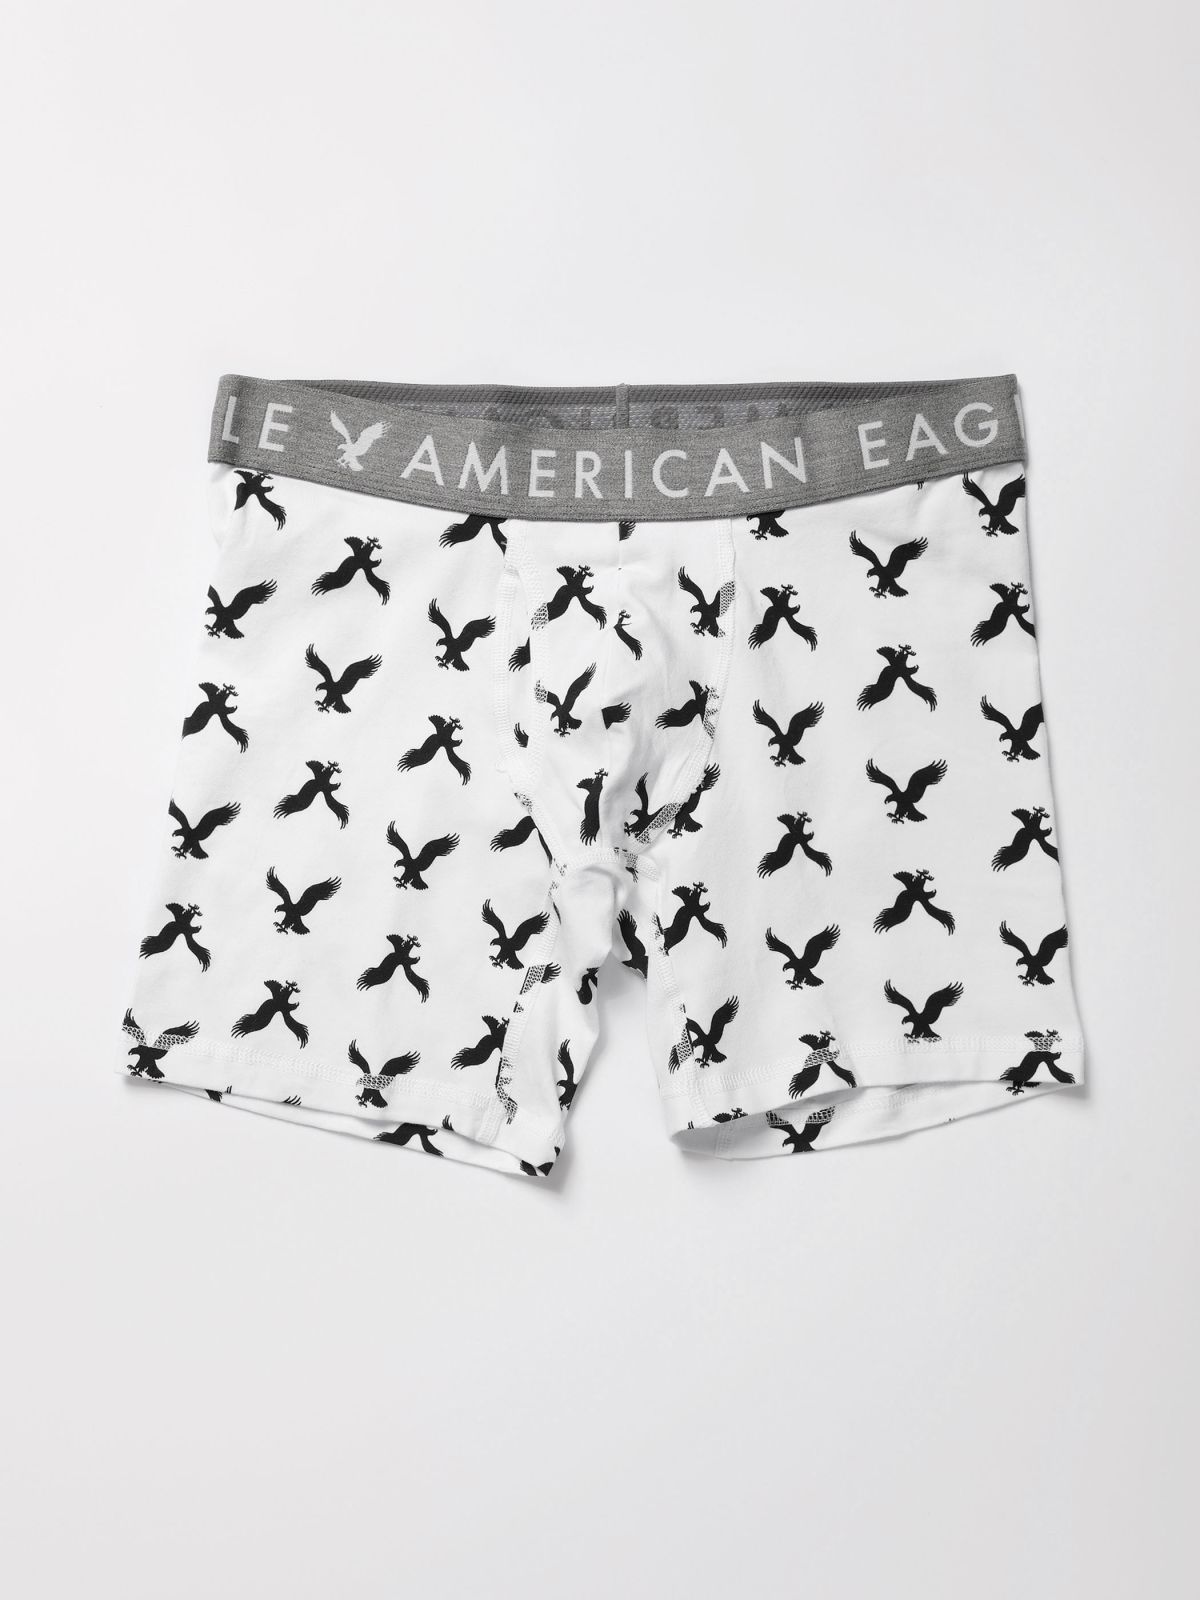  תחתוני בוקסר לונגליין בהדפס לוגו / גברים של AMERICAN EAGLE